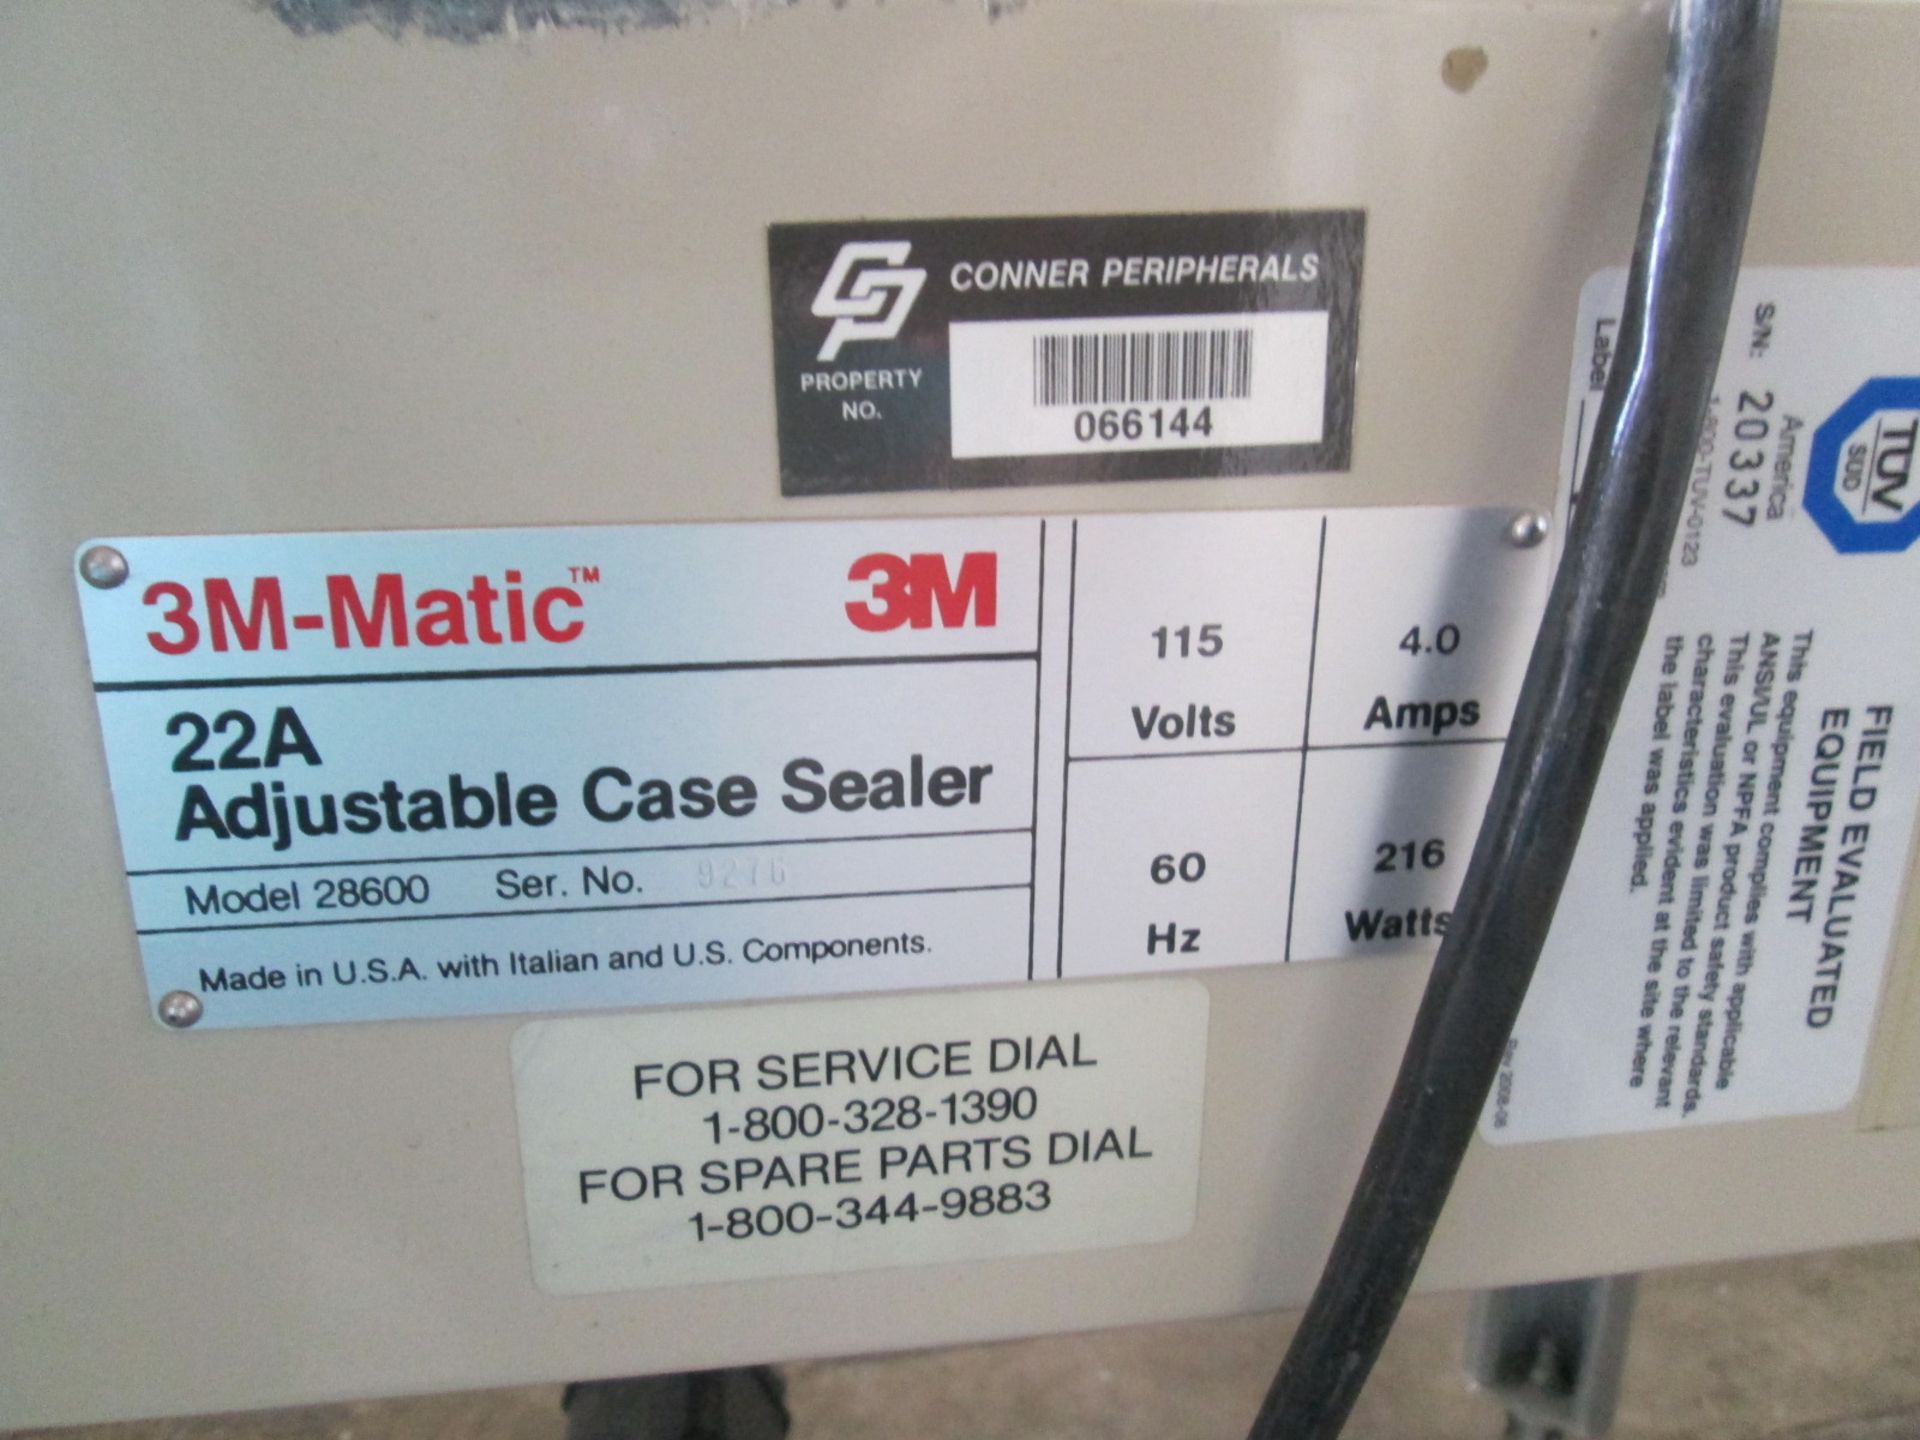 3M-Matic 22A Adjustable Case Sealer, Model 28600, Serial Number 9276, 115v, Top and Bottom Sealer, - Image 10 of 14